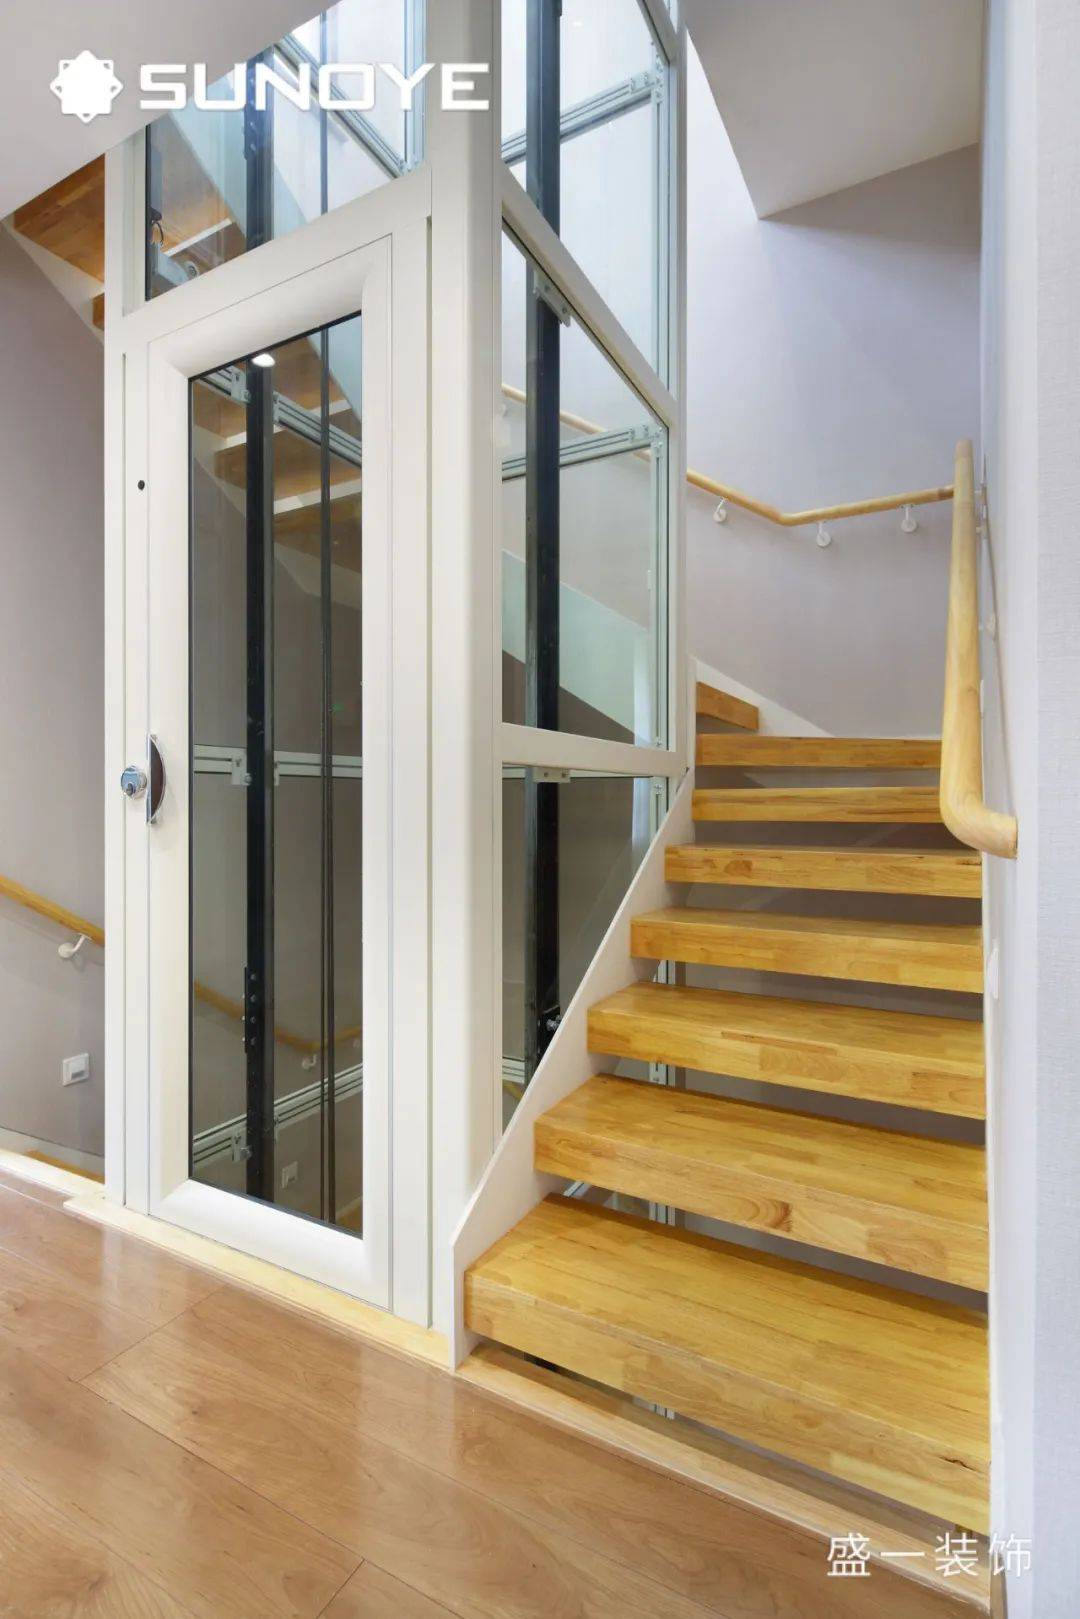 楼梯的设计使得中间节省的空间可以改造为其他用途,这里放置一个电梯